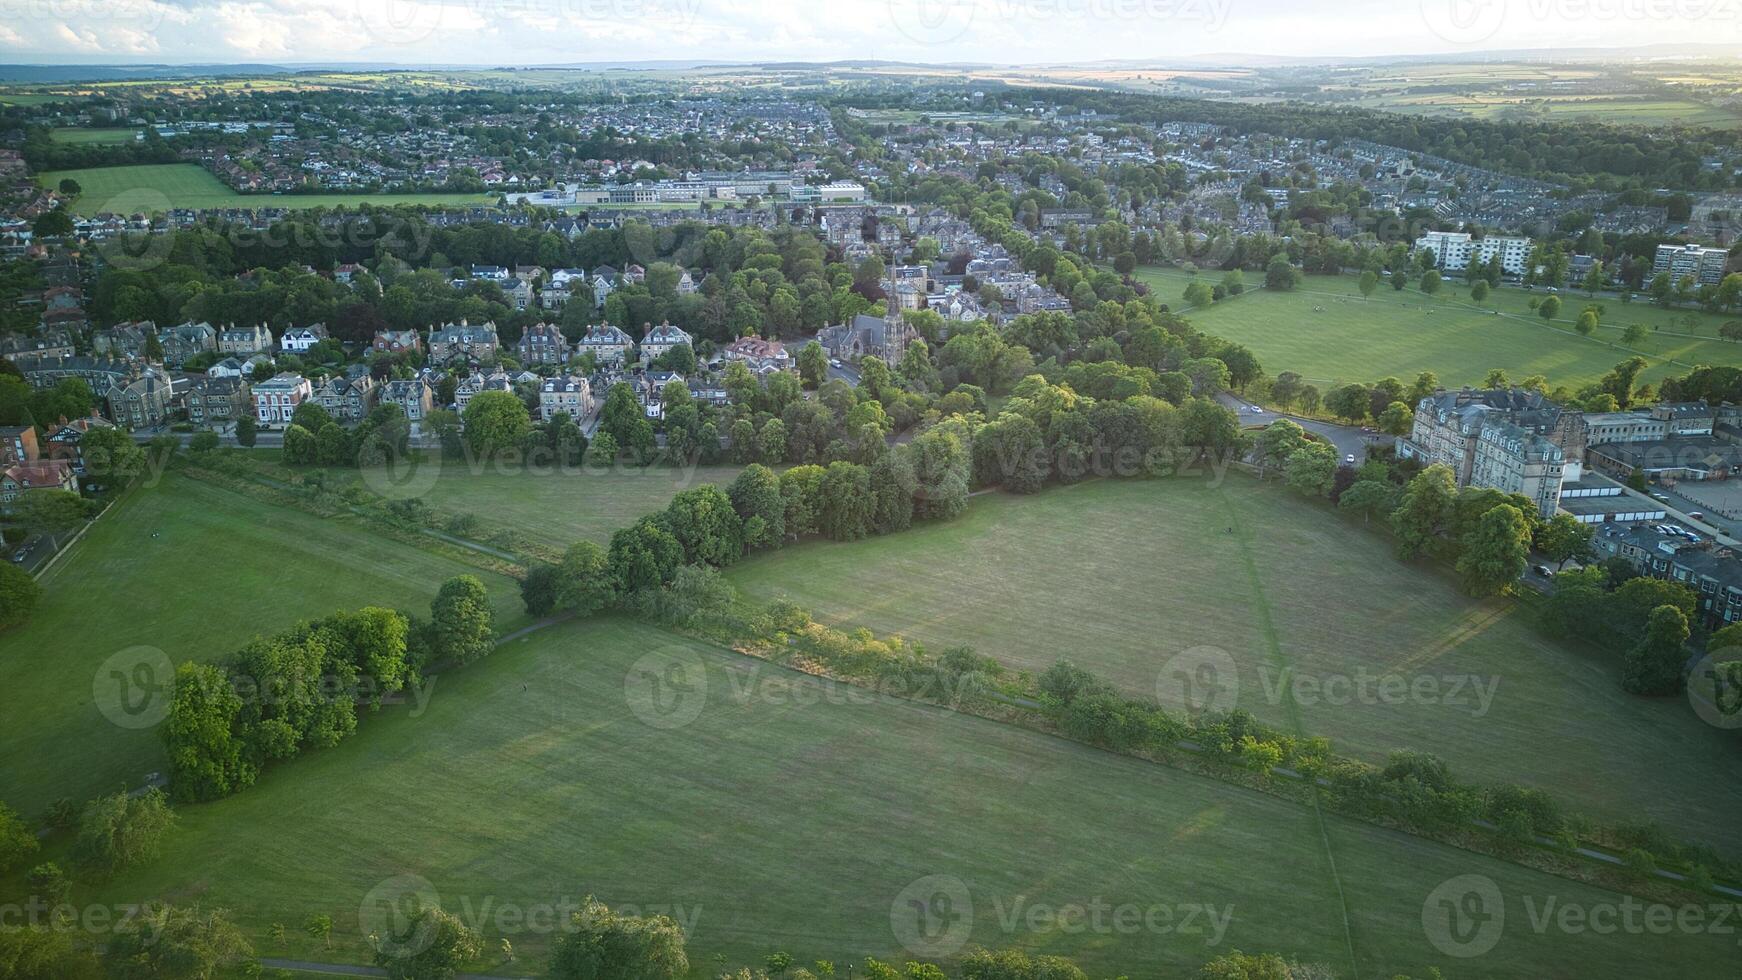 antenne visie van een groen buitenwijk landschap Bij schemer met woon- huizen en Open velden in harrogeren, noorden yorkshire. foto